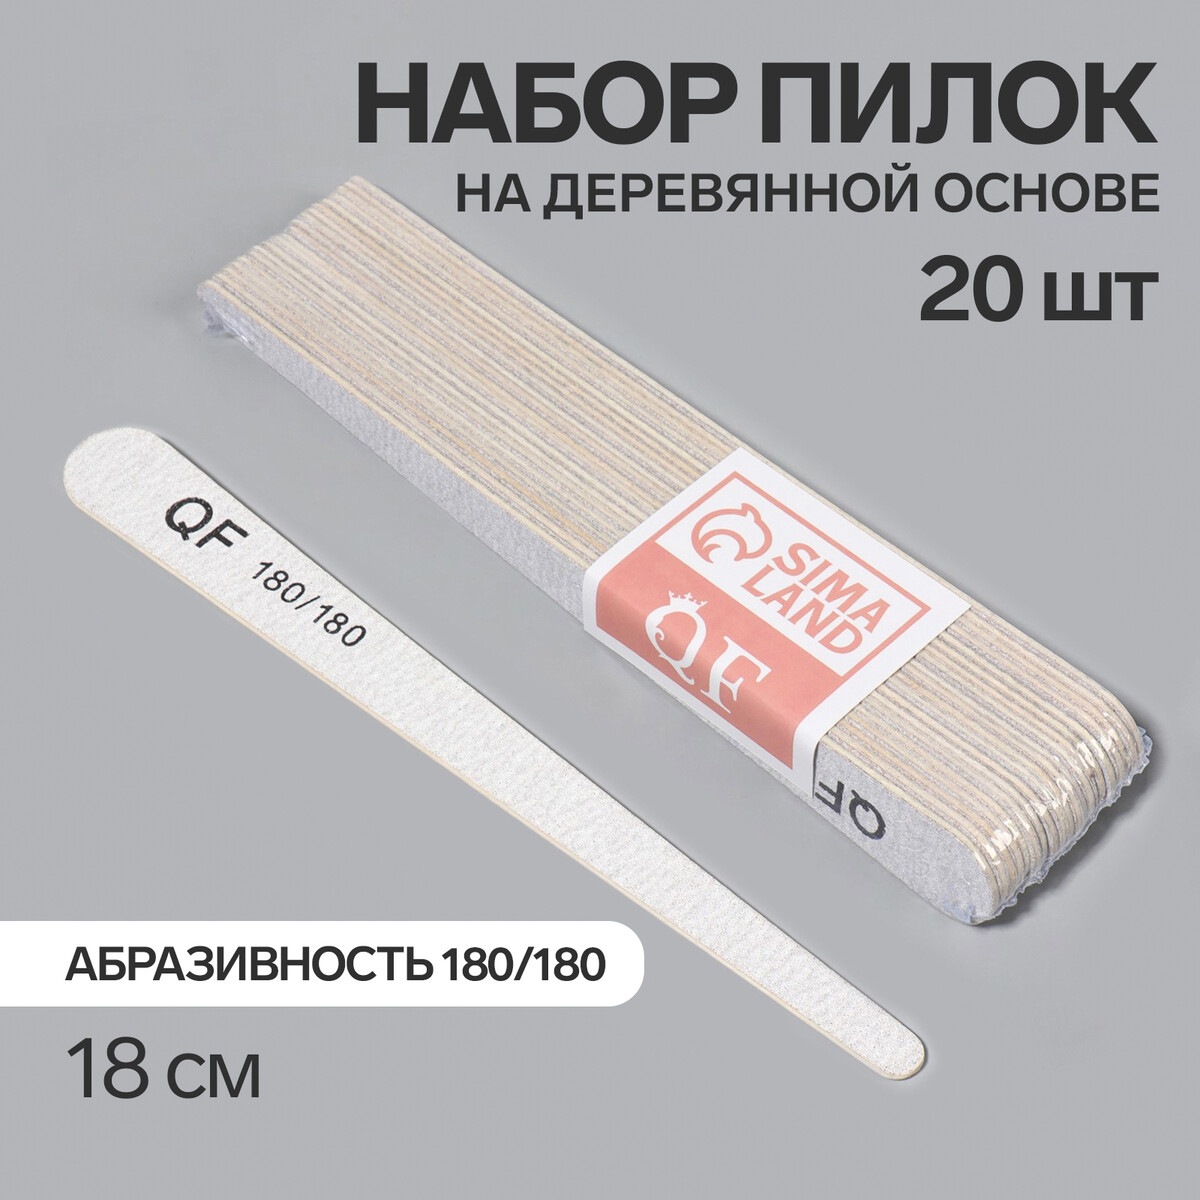 Пилка-наждак, набор 20 шт, деревянная основа, абразивность 180/180, 18 см, цвет серый палка основа для макраме деревянная без покрытия d 1 5 × 30 см